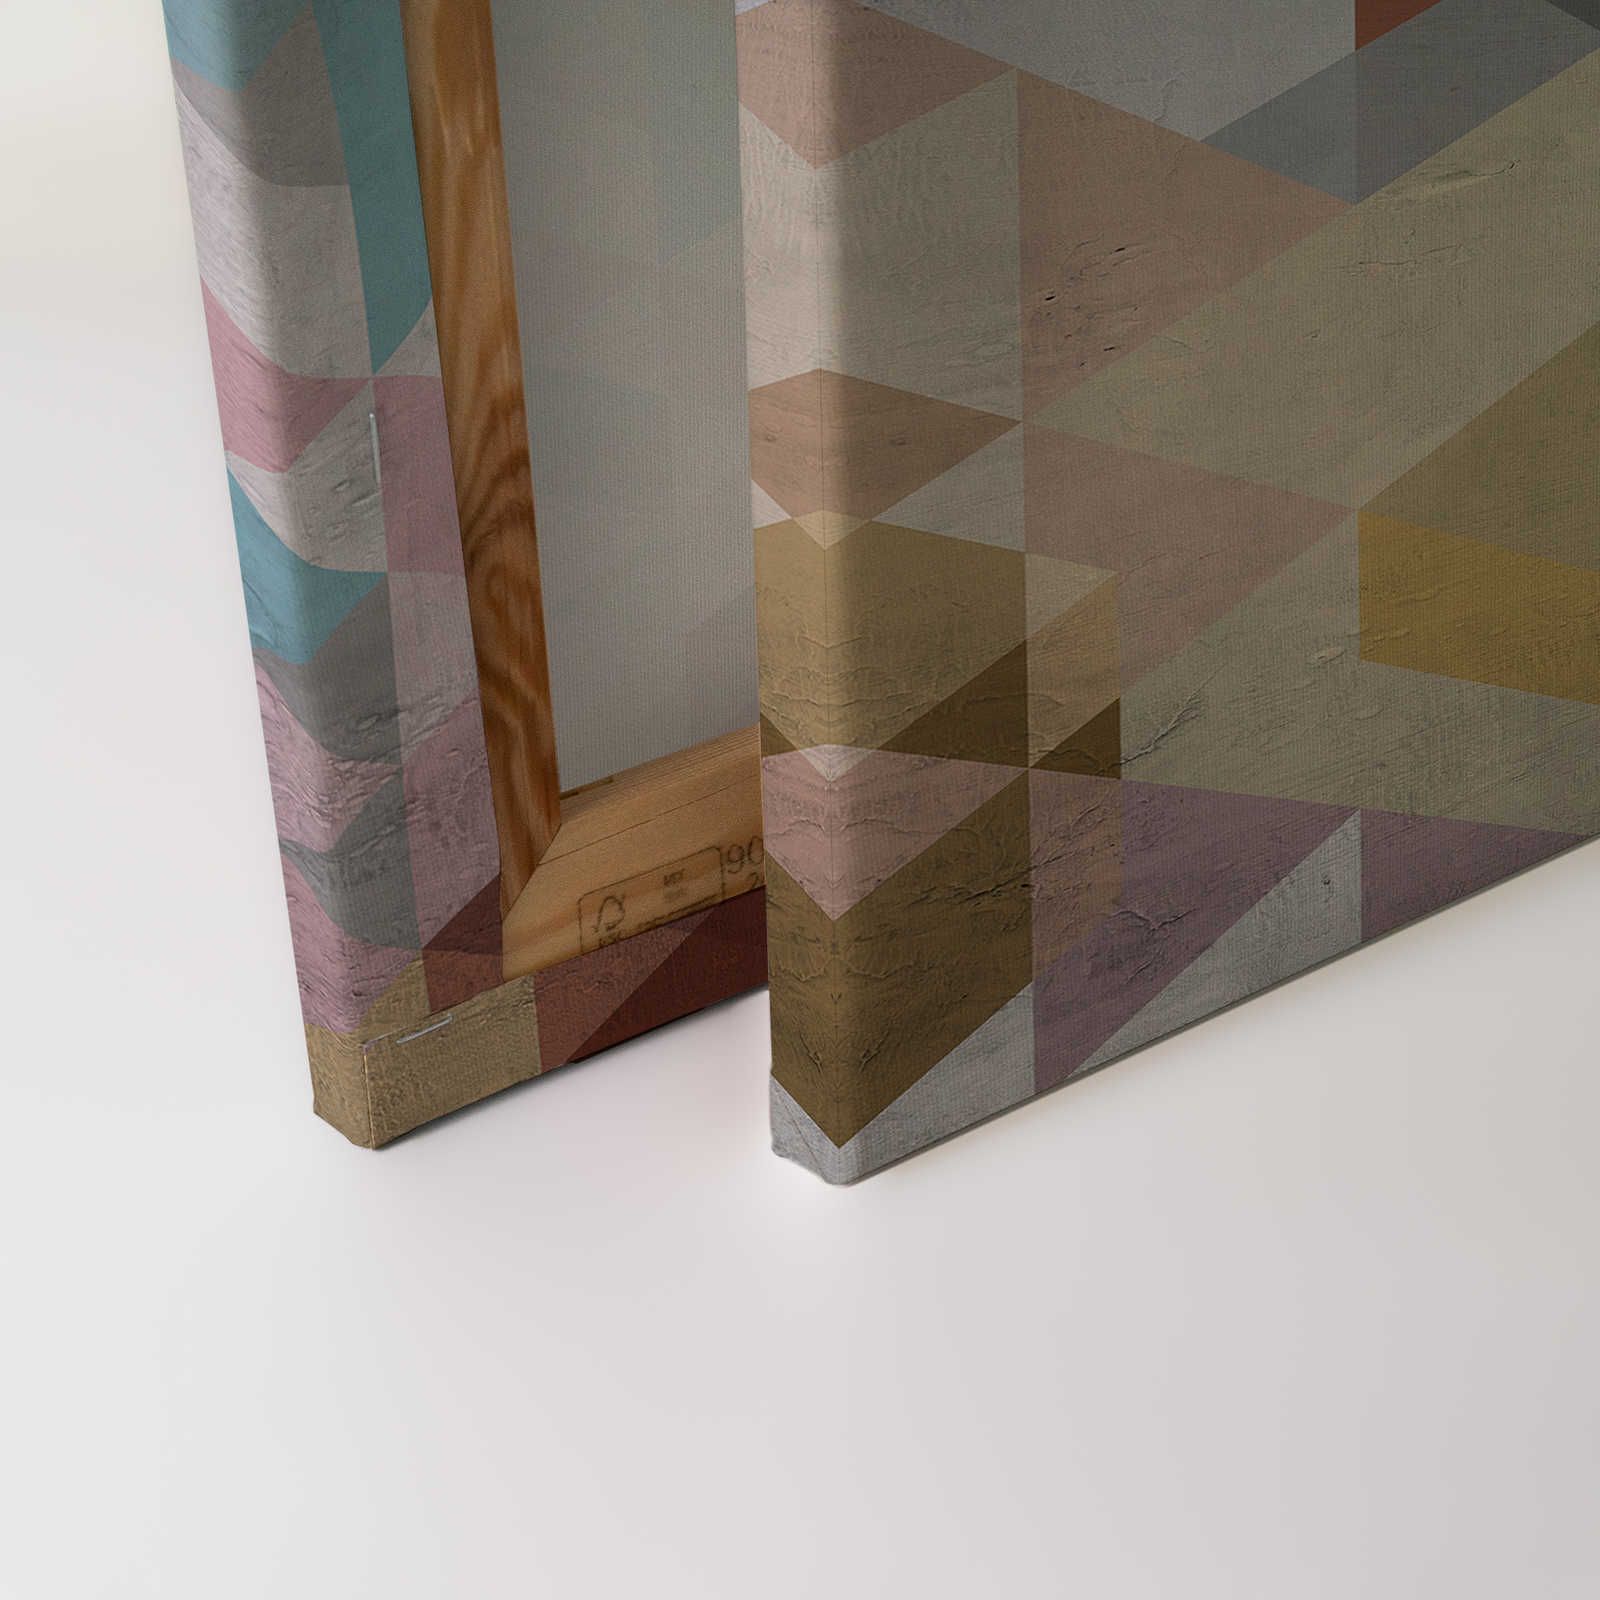             Toile losange, multicolore & géométrique, aspect usé - 0,90 m x 0,60 m
        